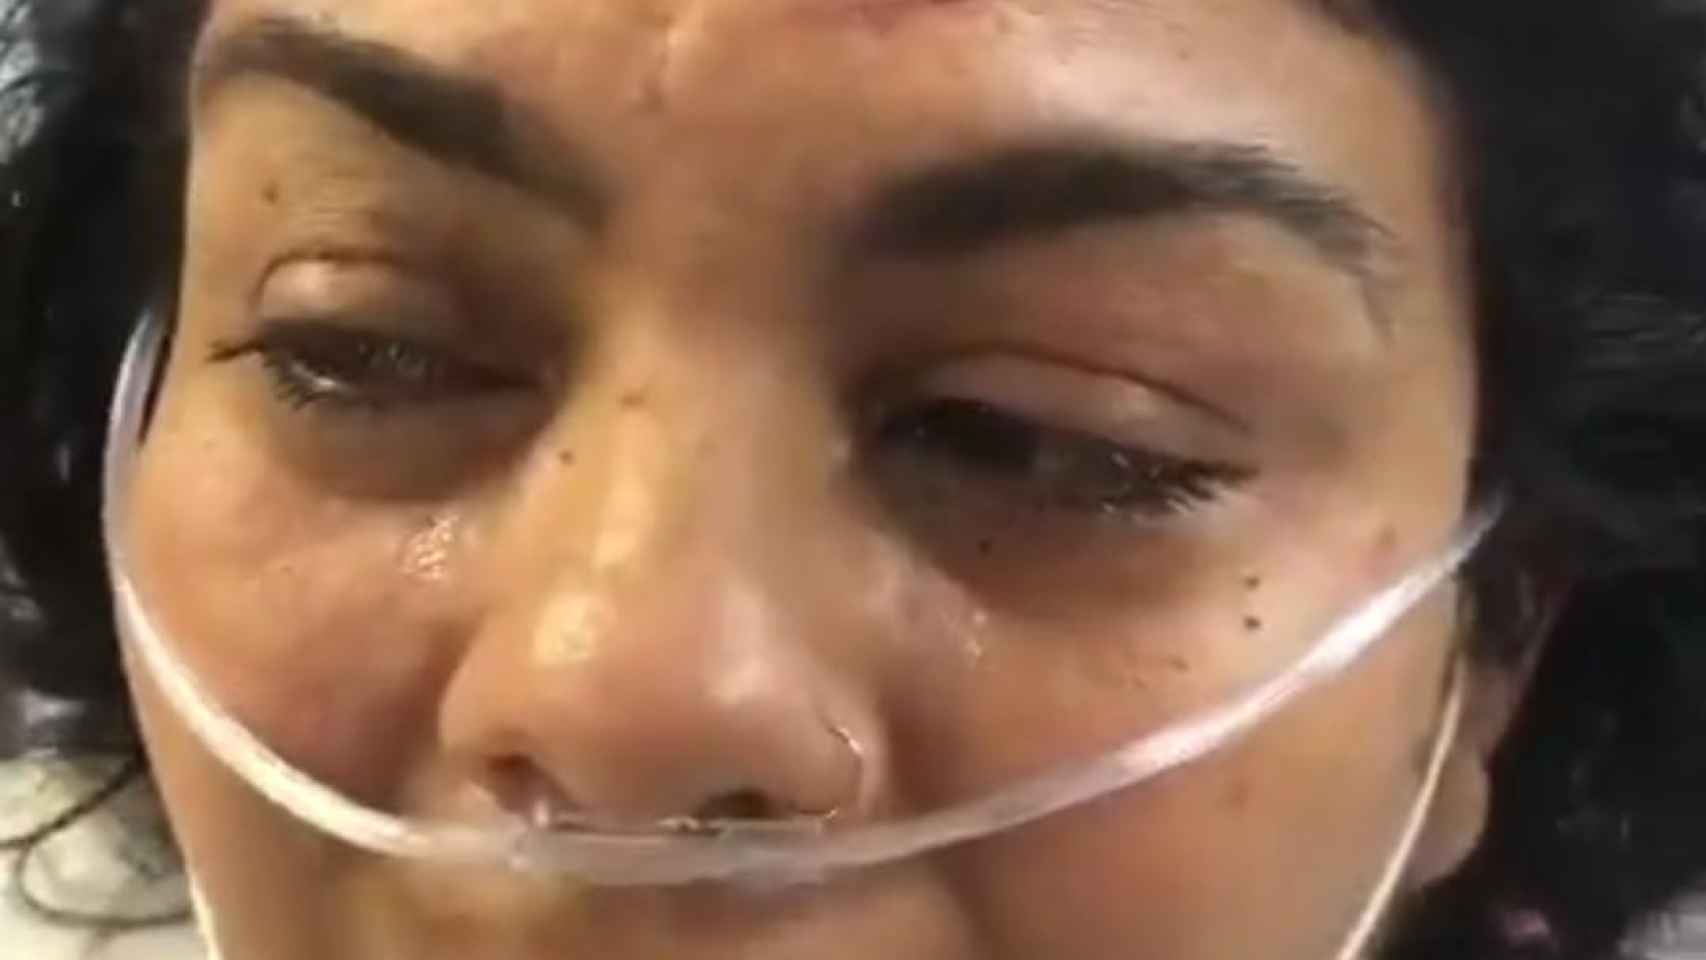 Saray Montoya, exconcursante de 'Supervivientes', en el hospital / INSTAGRAM